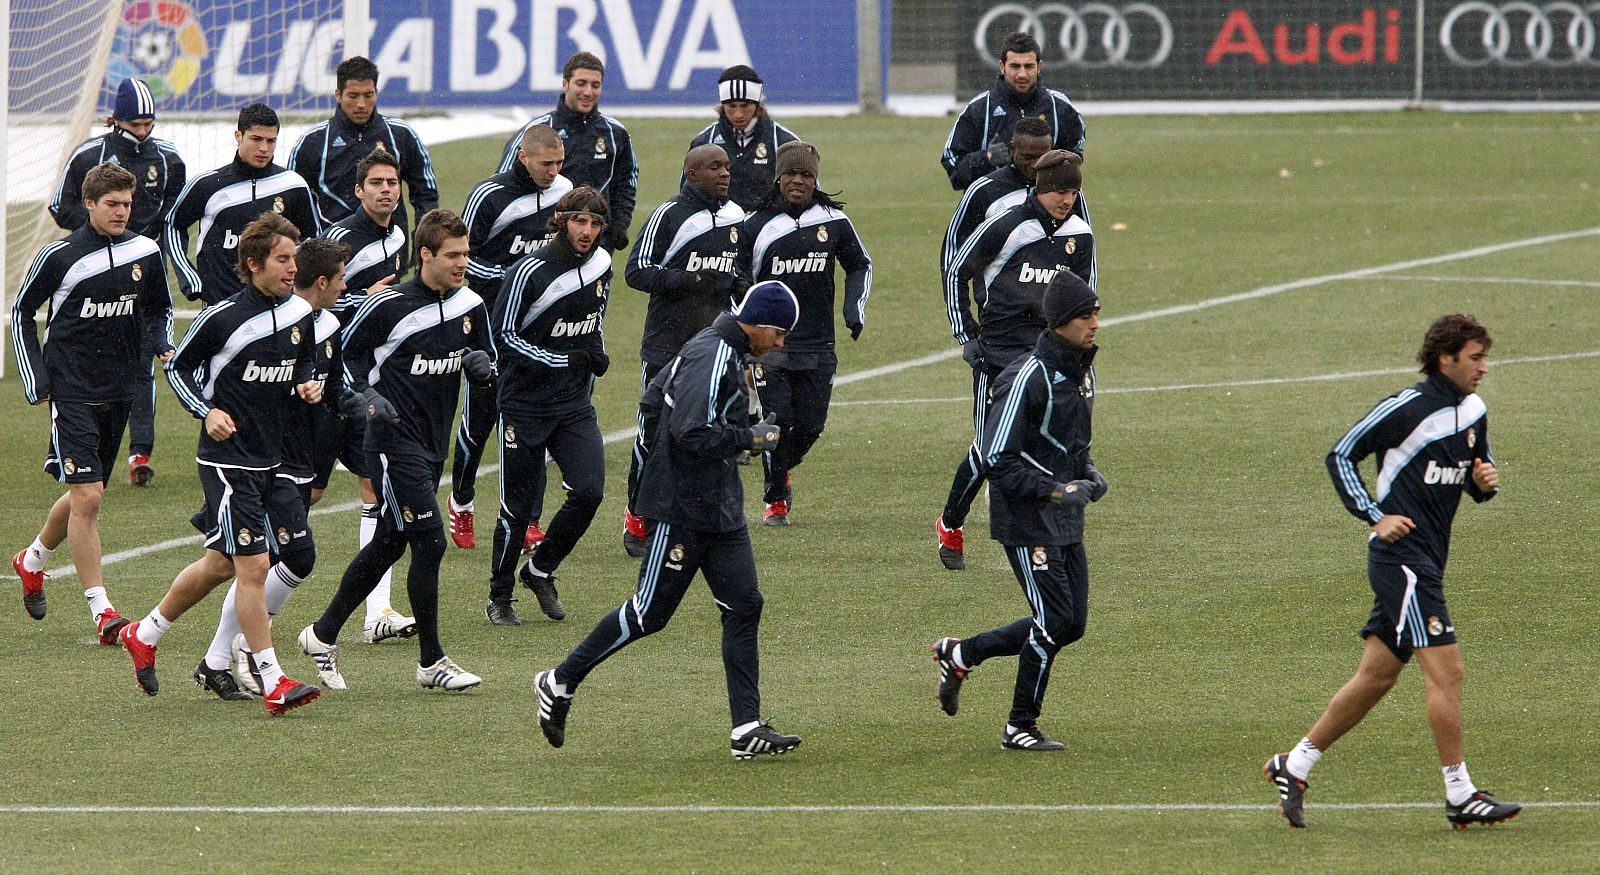 Los jugadores del Real Madrid encabezados por su capitán, Raúl, durante el entrenamiento de cara al partido de liga frente al Zaragoza.